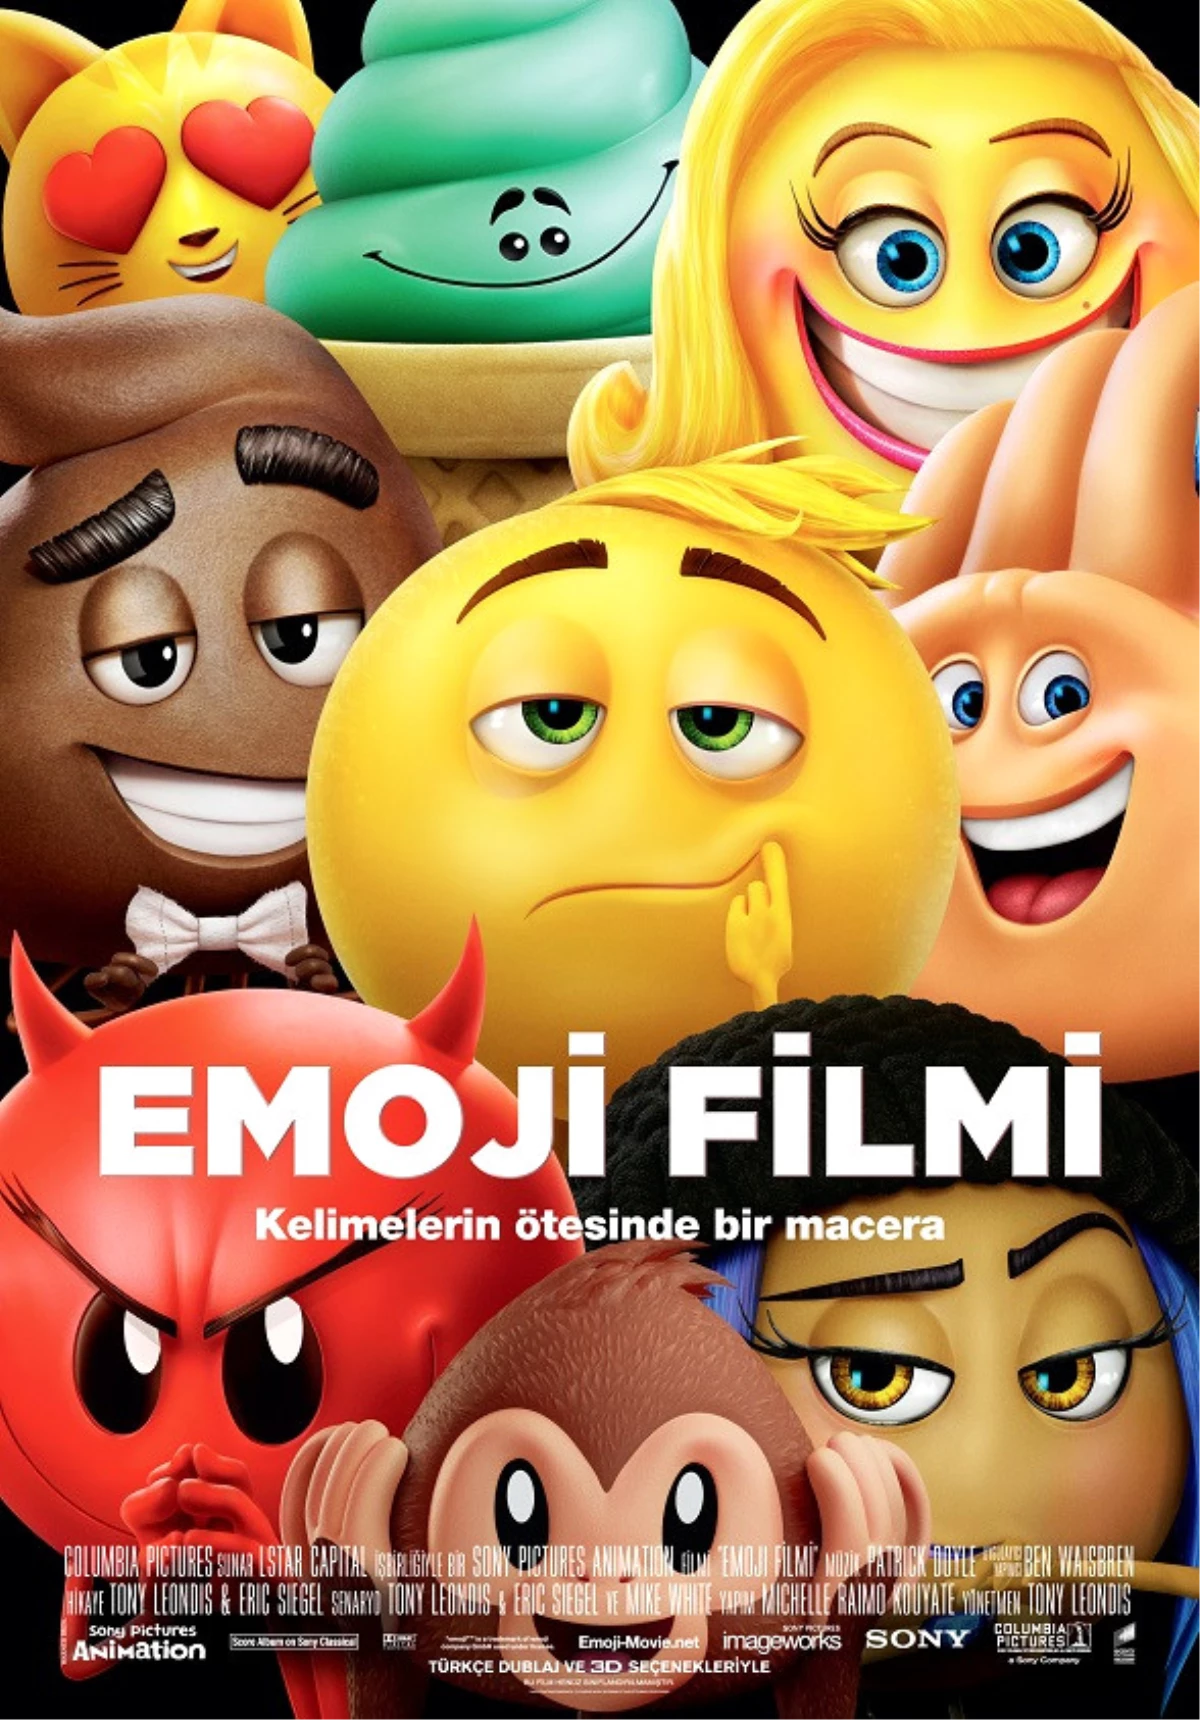 "Emoji Filmi" 8 Eylül, Cuma Günü Sinemalarda!